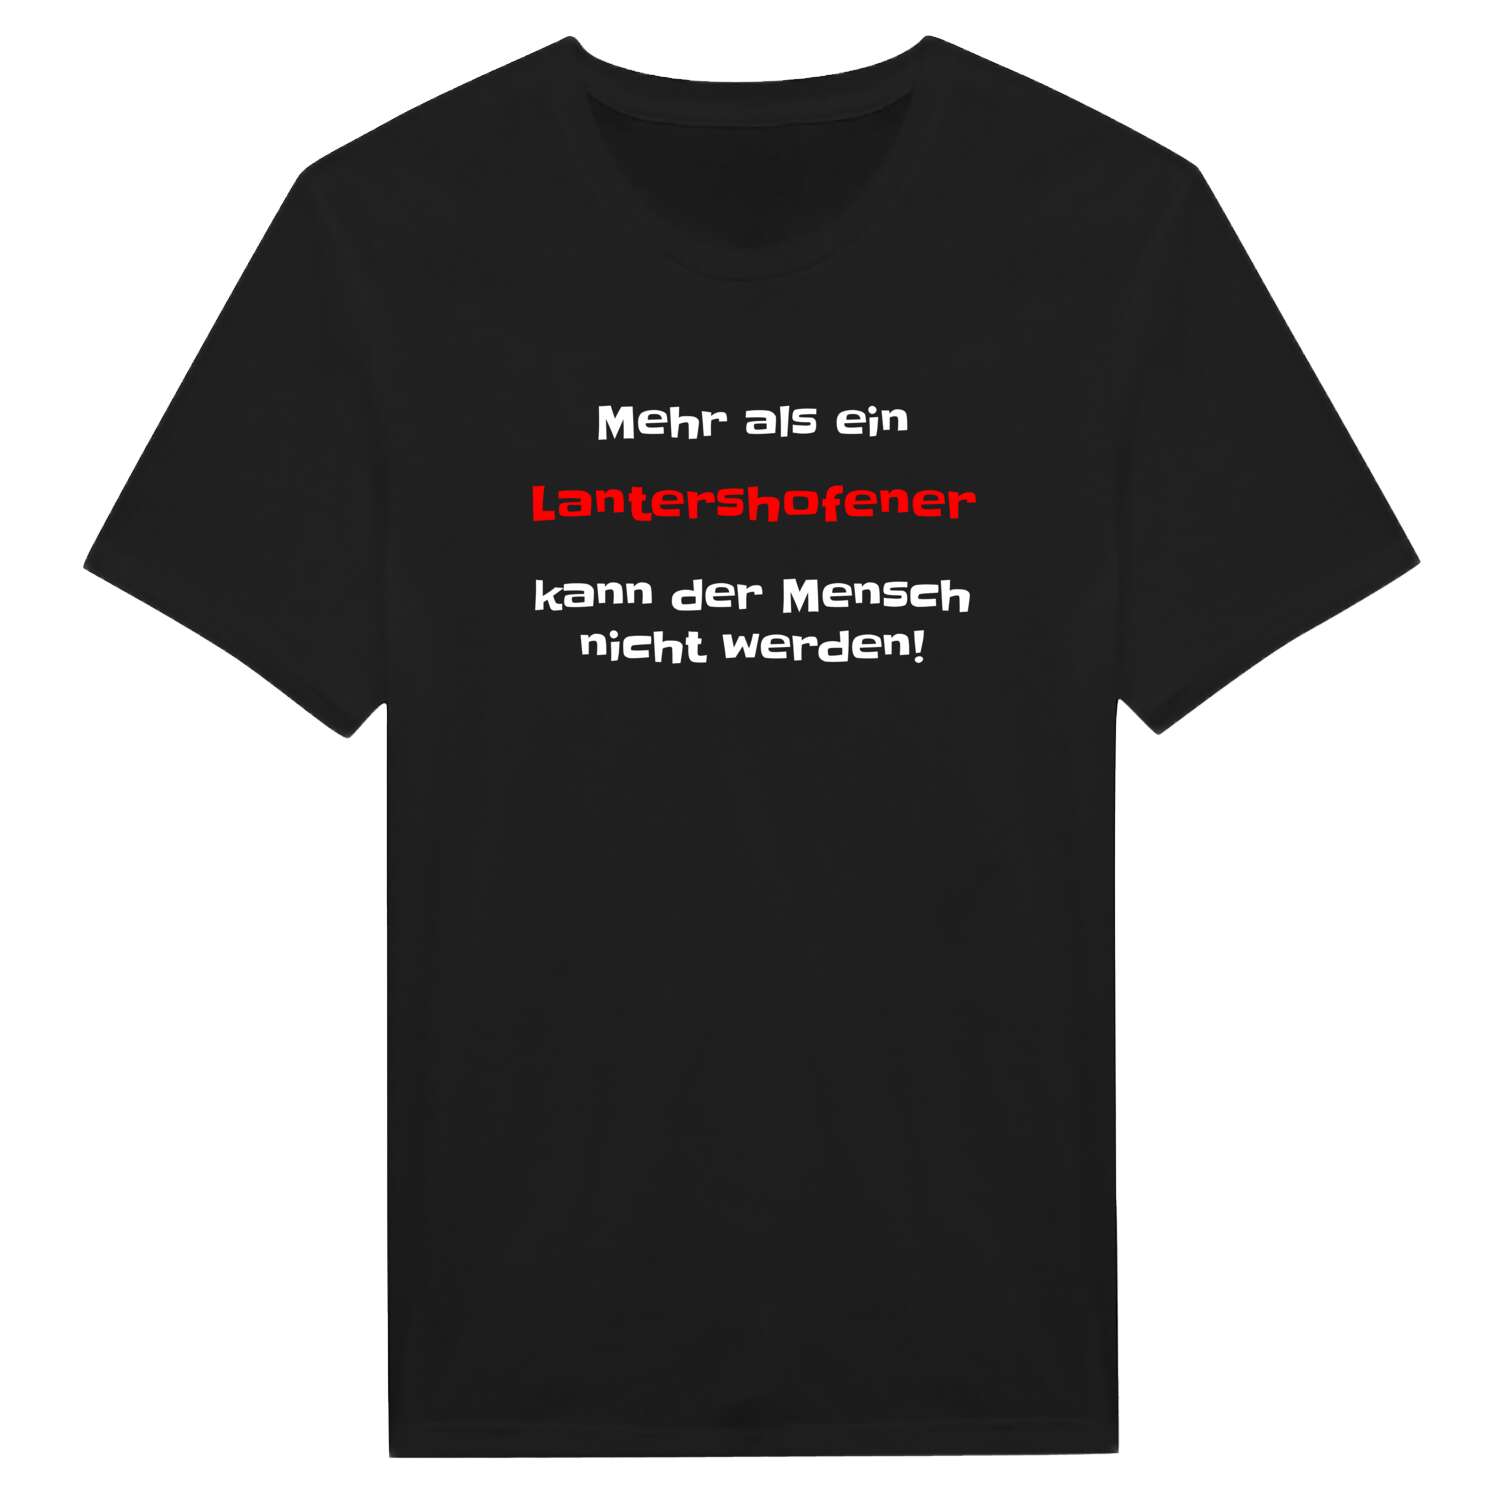 Lantershofen T-Shirt »Mehr als ein«